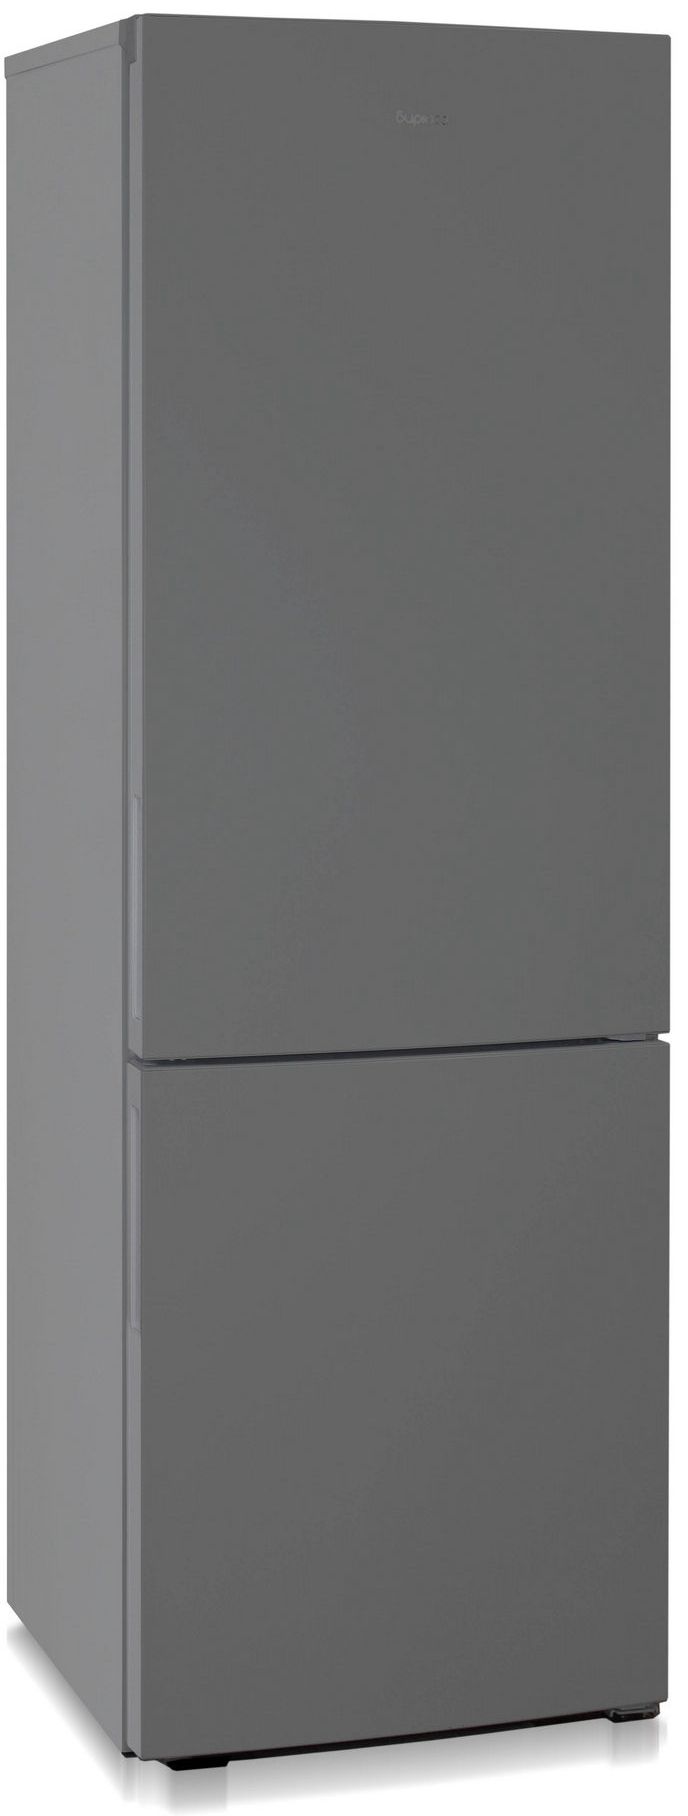 холодильник бирюса 6027, купить в Красноярске холодильник бирюса 6027,  купить в Красноярске дешево холодильник бирюса 6027, купить в Красноярске минимальной цене холодильник бирюса 6027